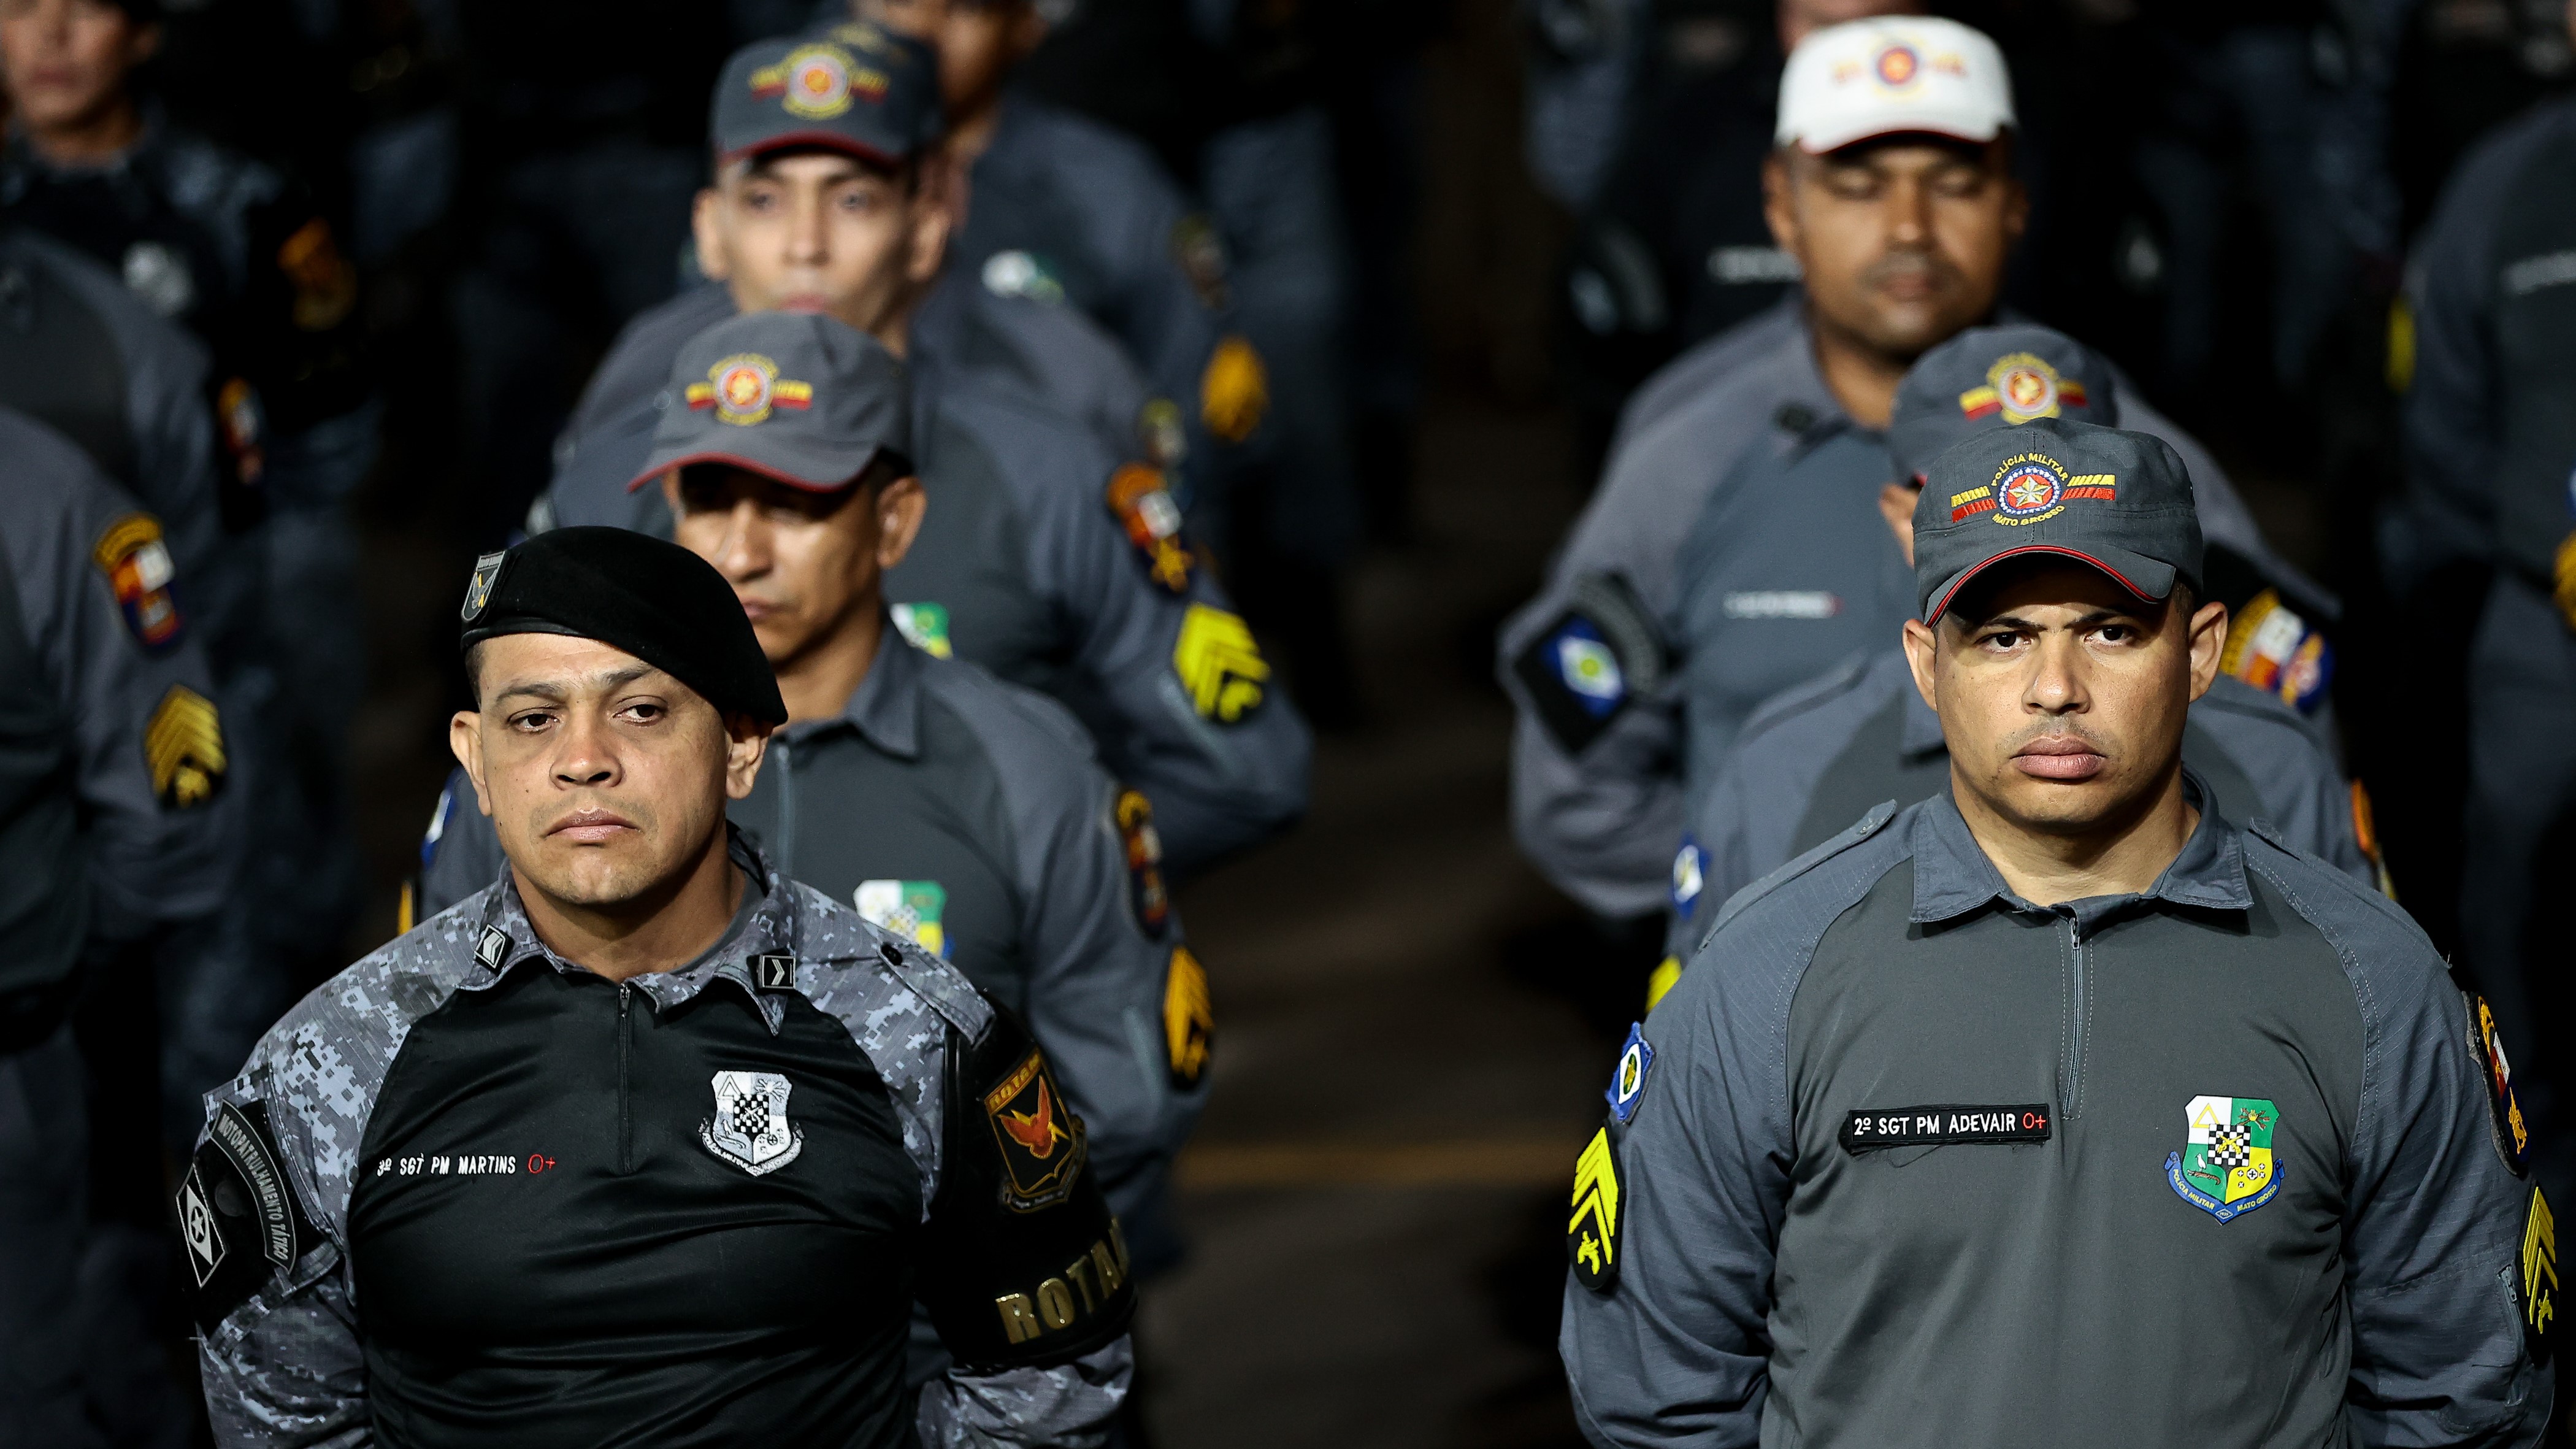 Polícia Militar de Mato Grosso promove 706 oficiais e praças durante solenidade em Cuiabá